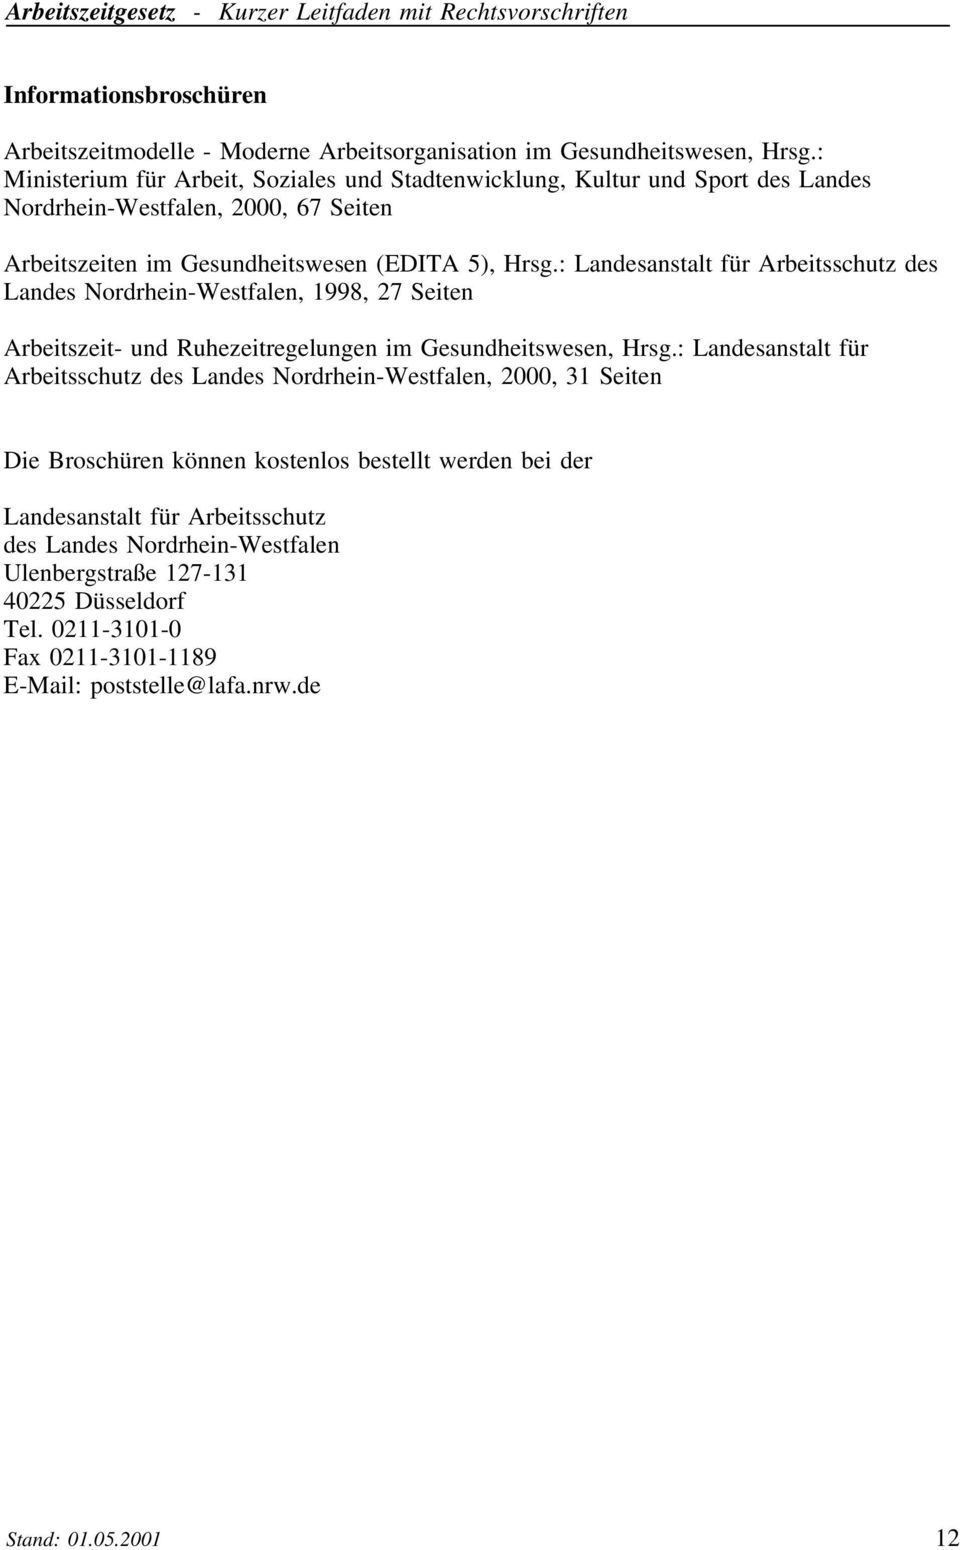 : Landesanstalt für Arbeitsschutz des Landes Nordrhein-Westfalen, 1998, 27 Seiten Arbeitszeit- und Ruhezeitregelungen im Gesundheitswesen, Hrsg.